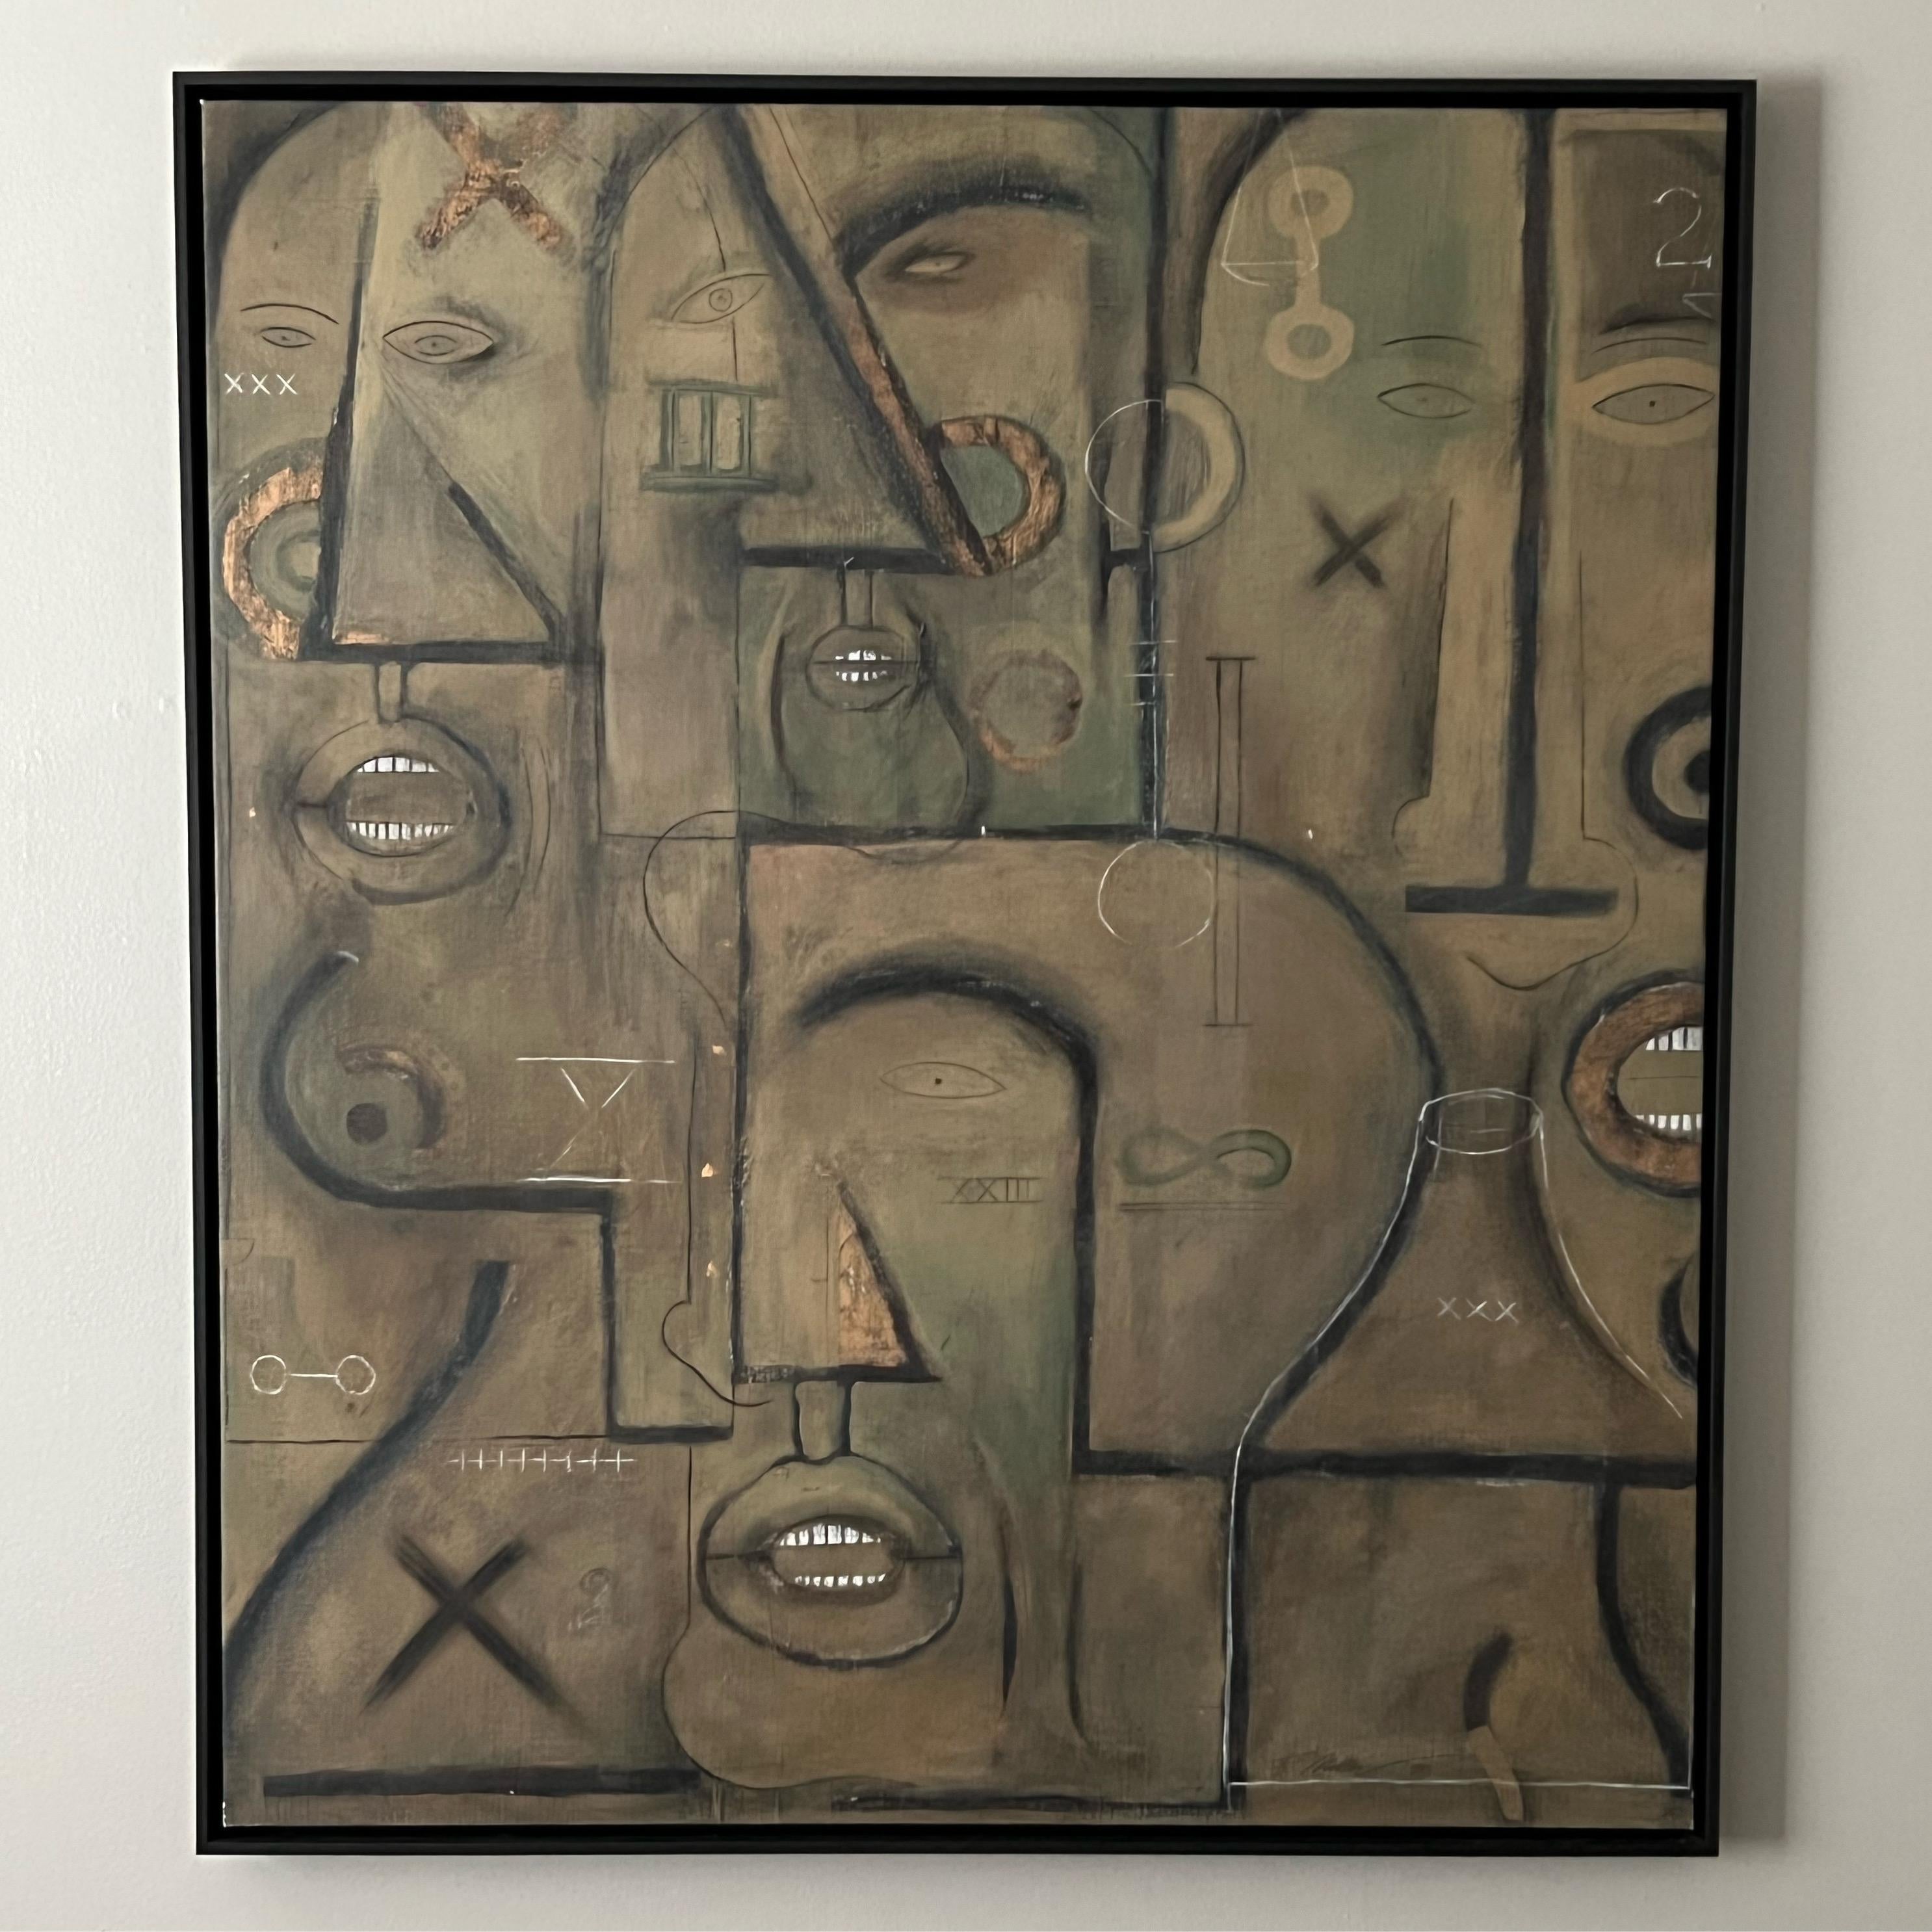 Œuvre d'art cubiste, acrylique sur toile, par F. Miller, 1998. Dimensions : L42.5